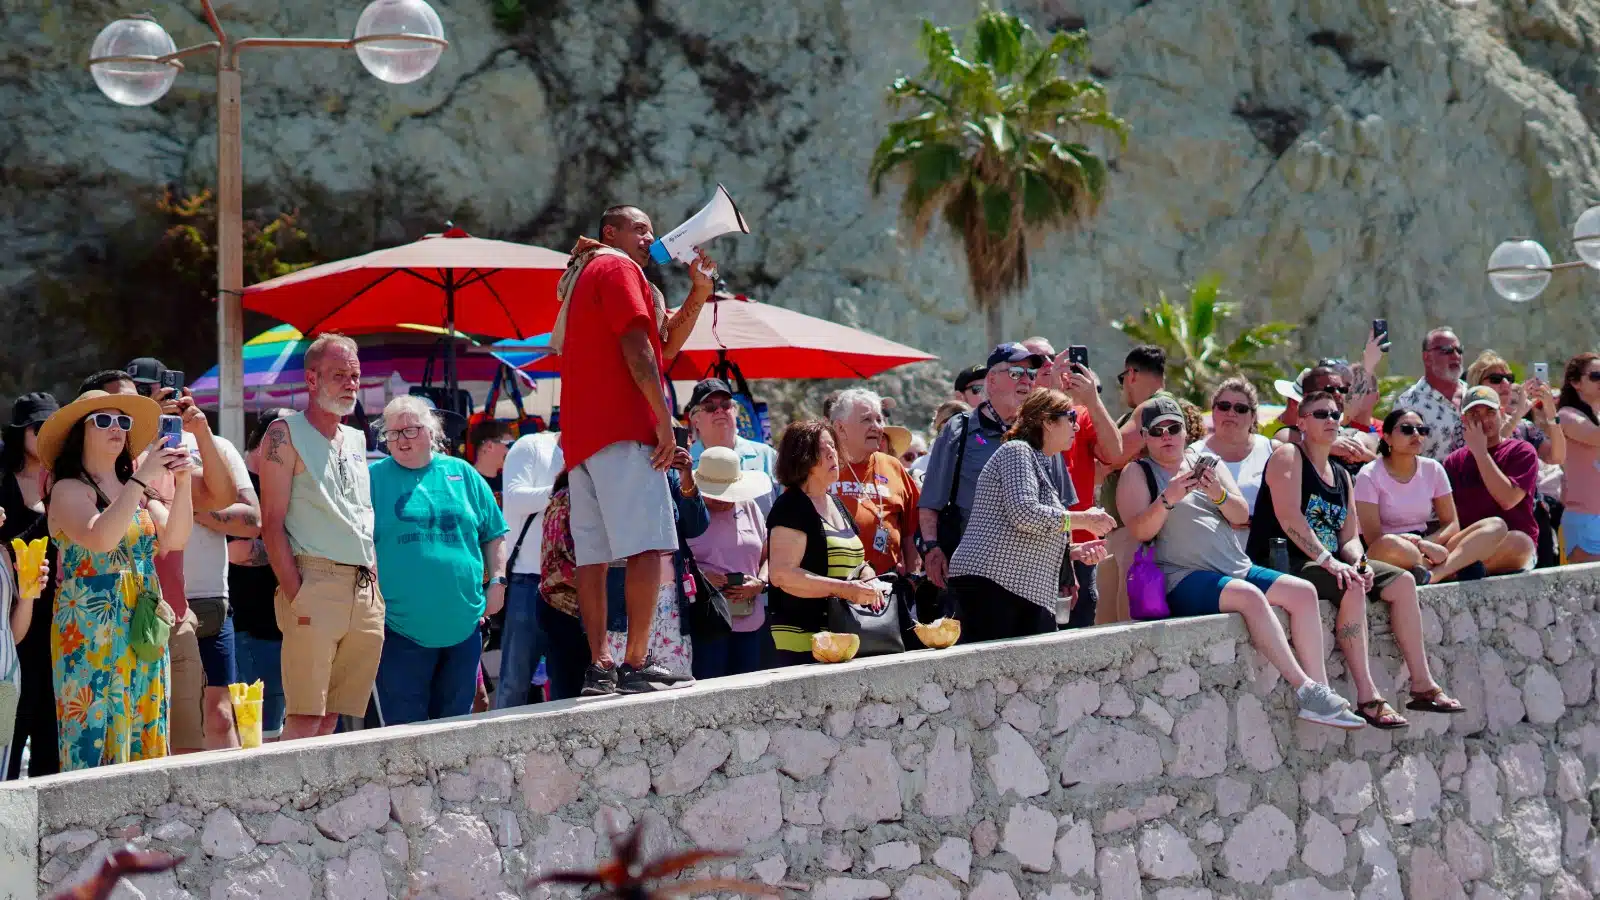 Turistas que abordaron el crucero “Koningsdam” disfrutando de Mazatlán en su parada